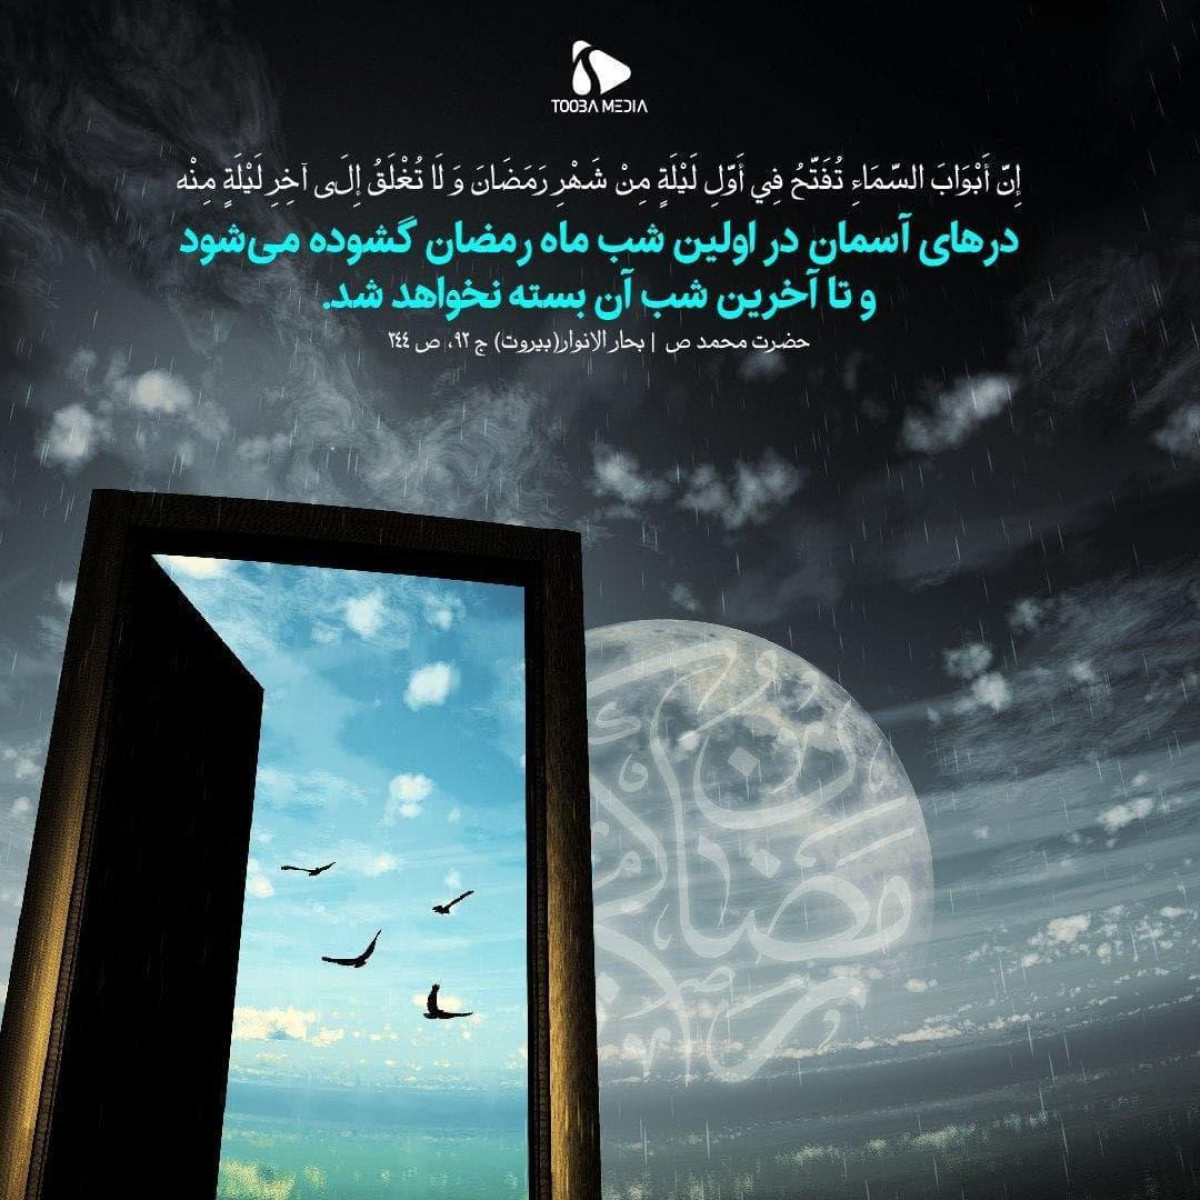 پوستر : حضرت محمد (ص) درهای آسمان در اولین شب ماه رمضان گشوده می شود